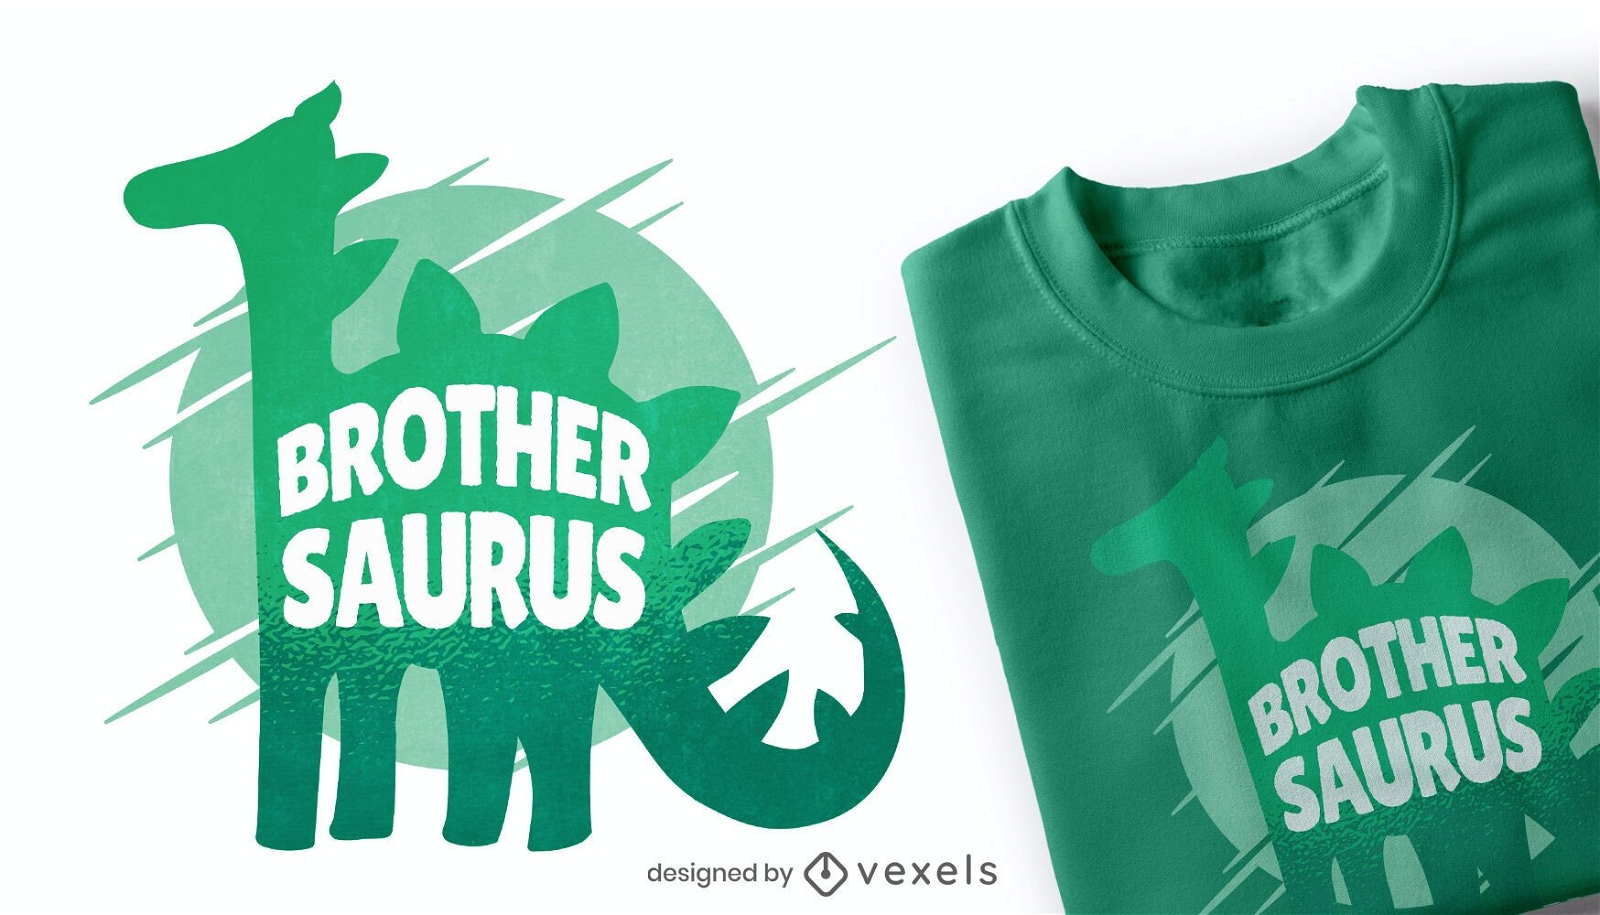 Brother saurus t-shirt design